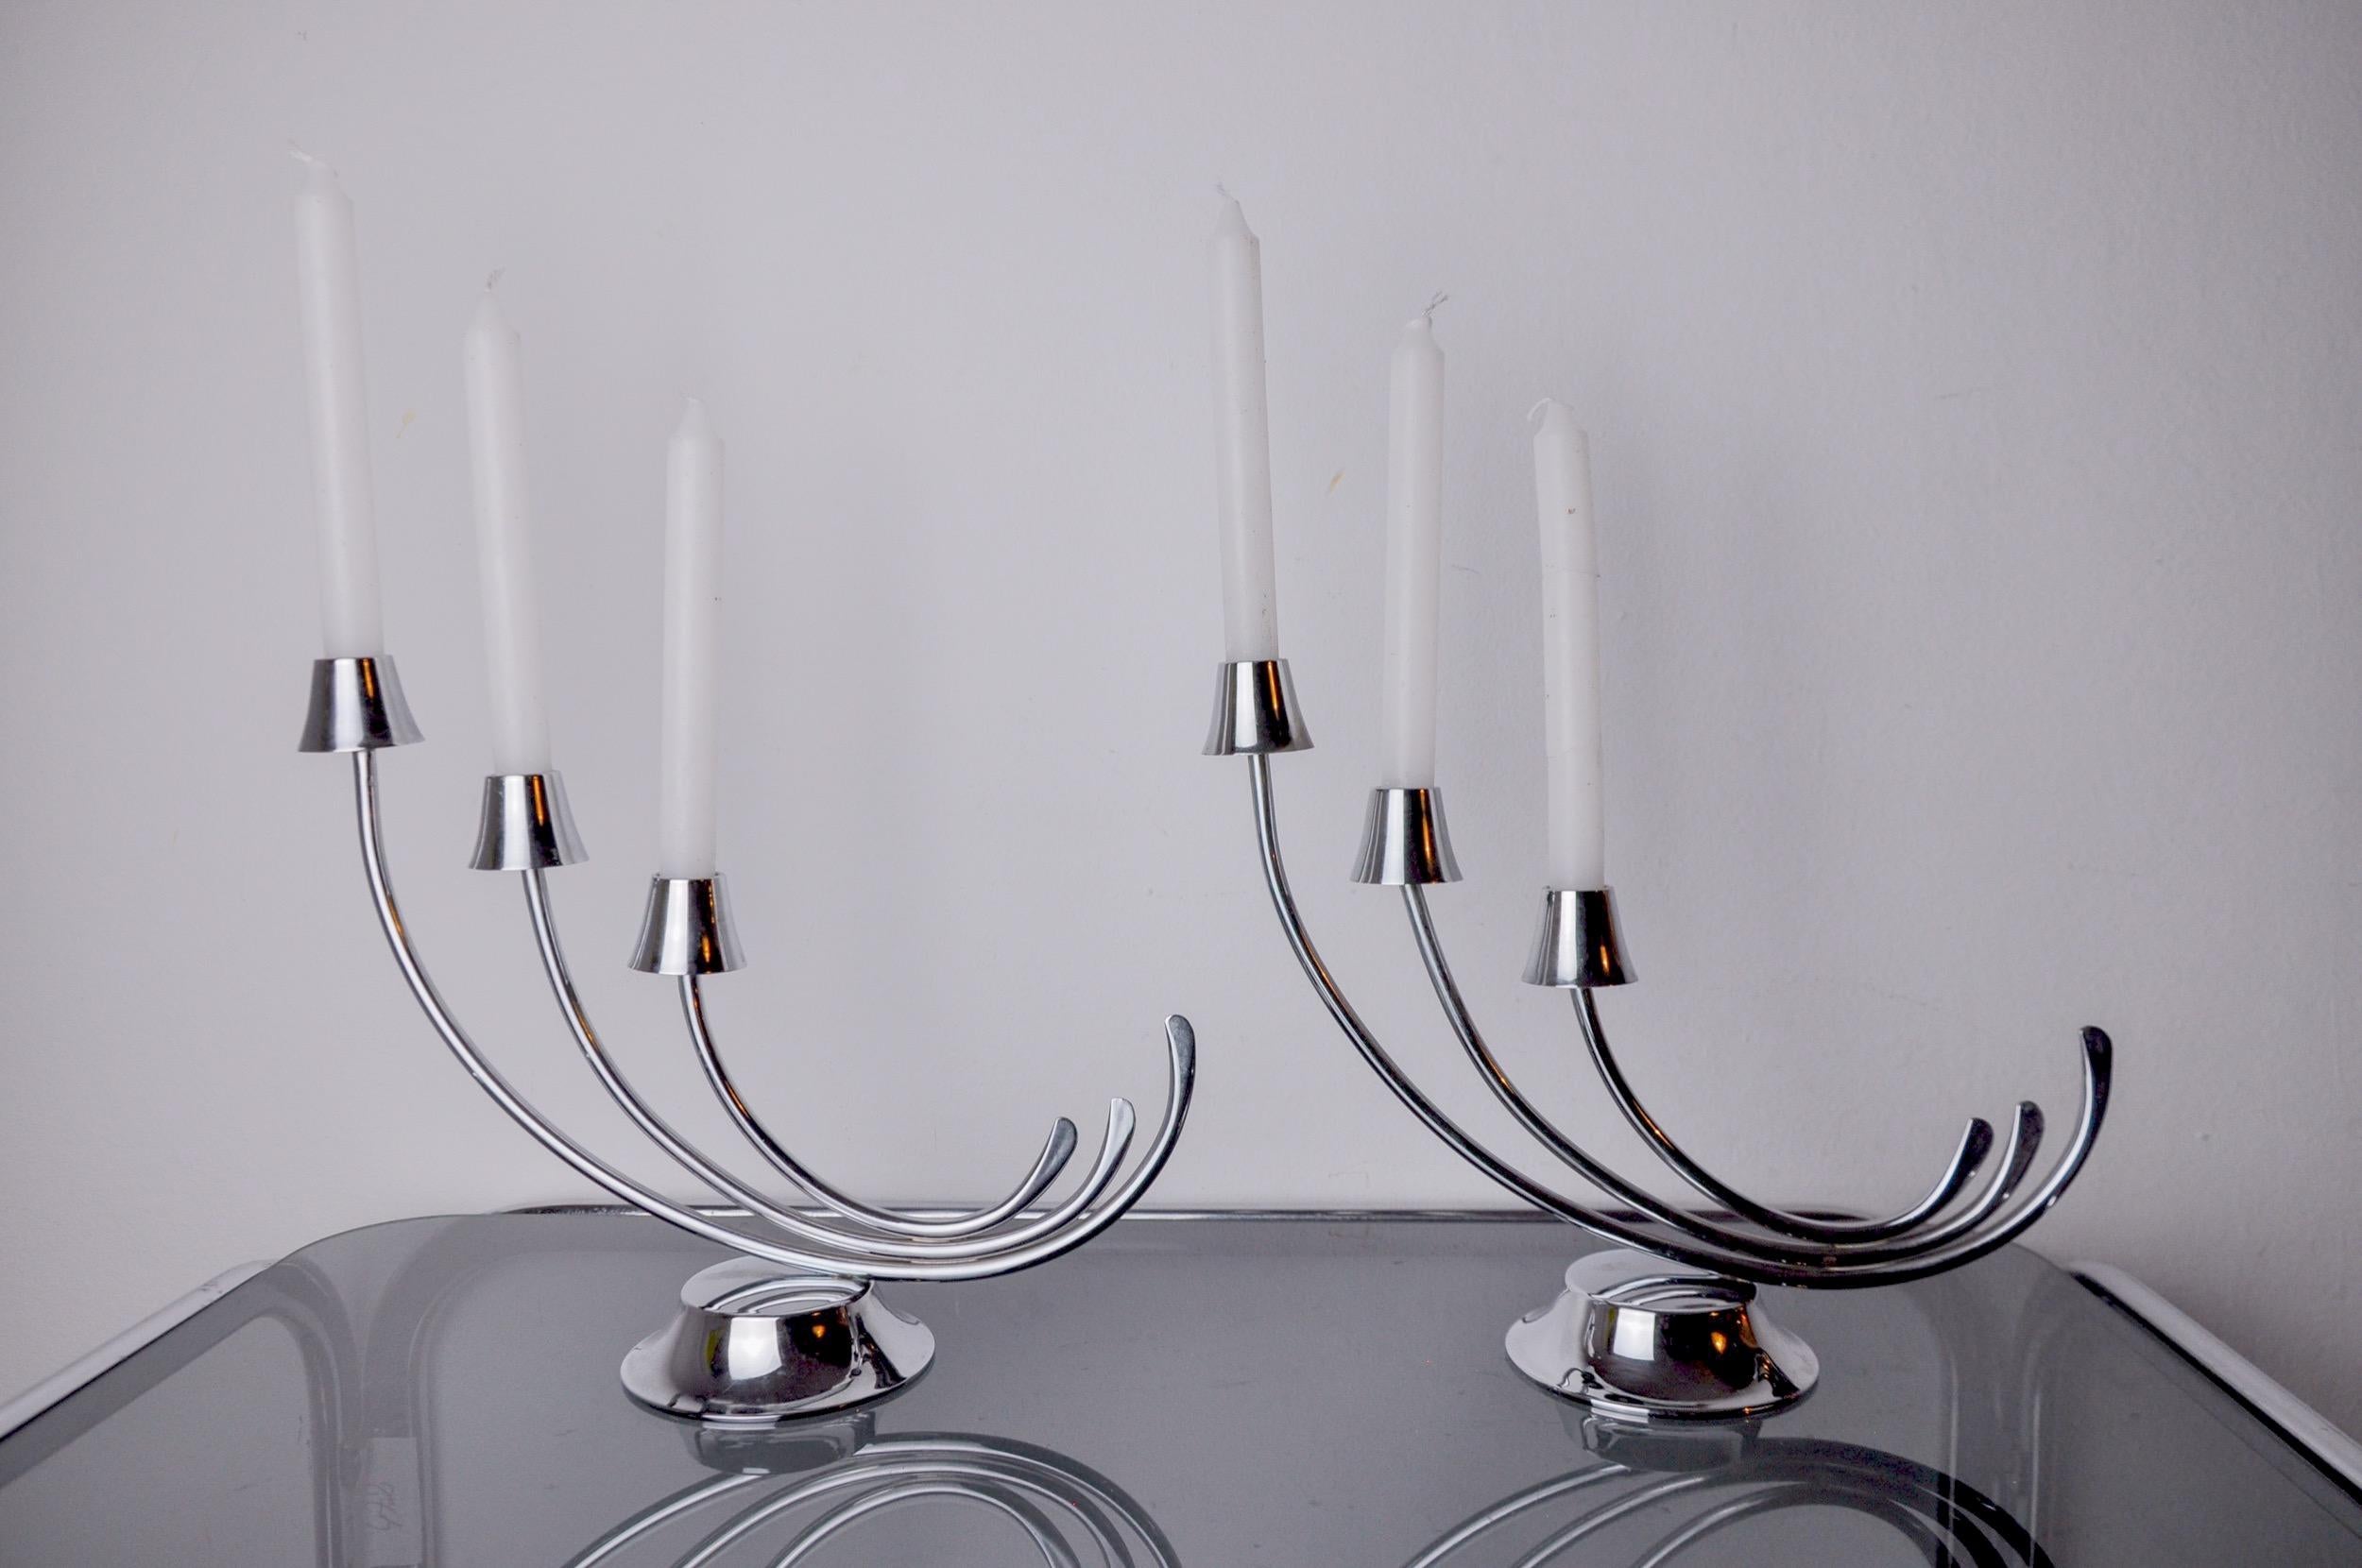 Très belle paire de chandeliers art déco en acier inoxydable conçus et produits en Espagne dans les années 1970. Structure en acier inoxydable 18/8 pouvant accueillir 3 bougies. Superbe objet design qui décorera à merveille votre intérieur. Très bon